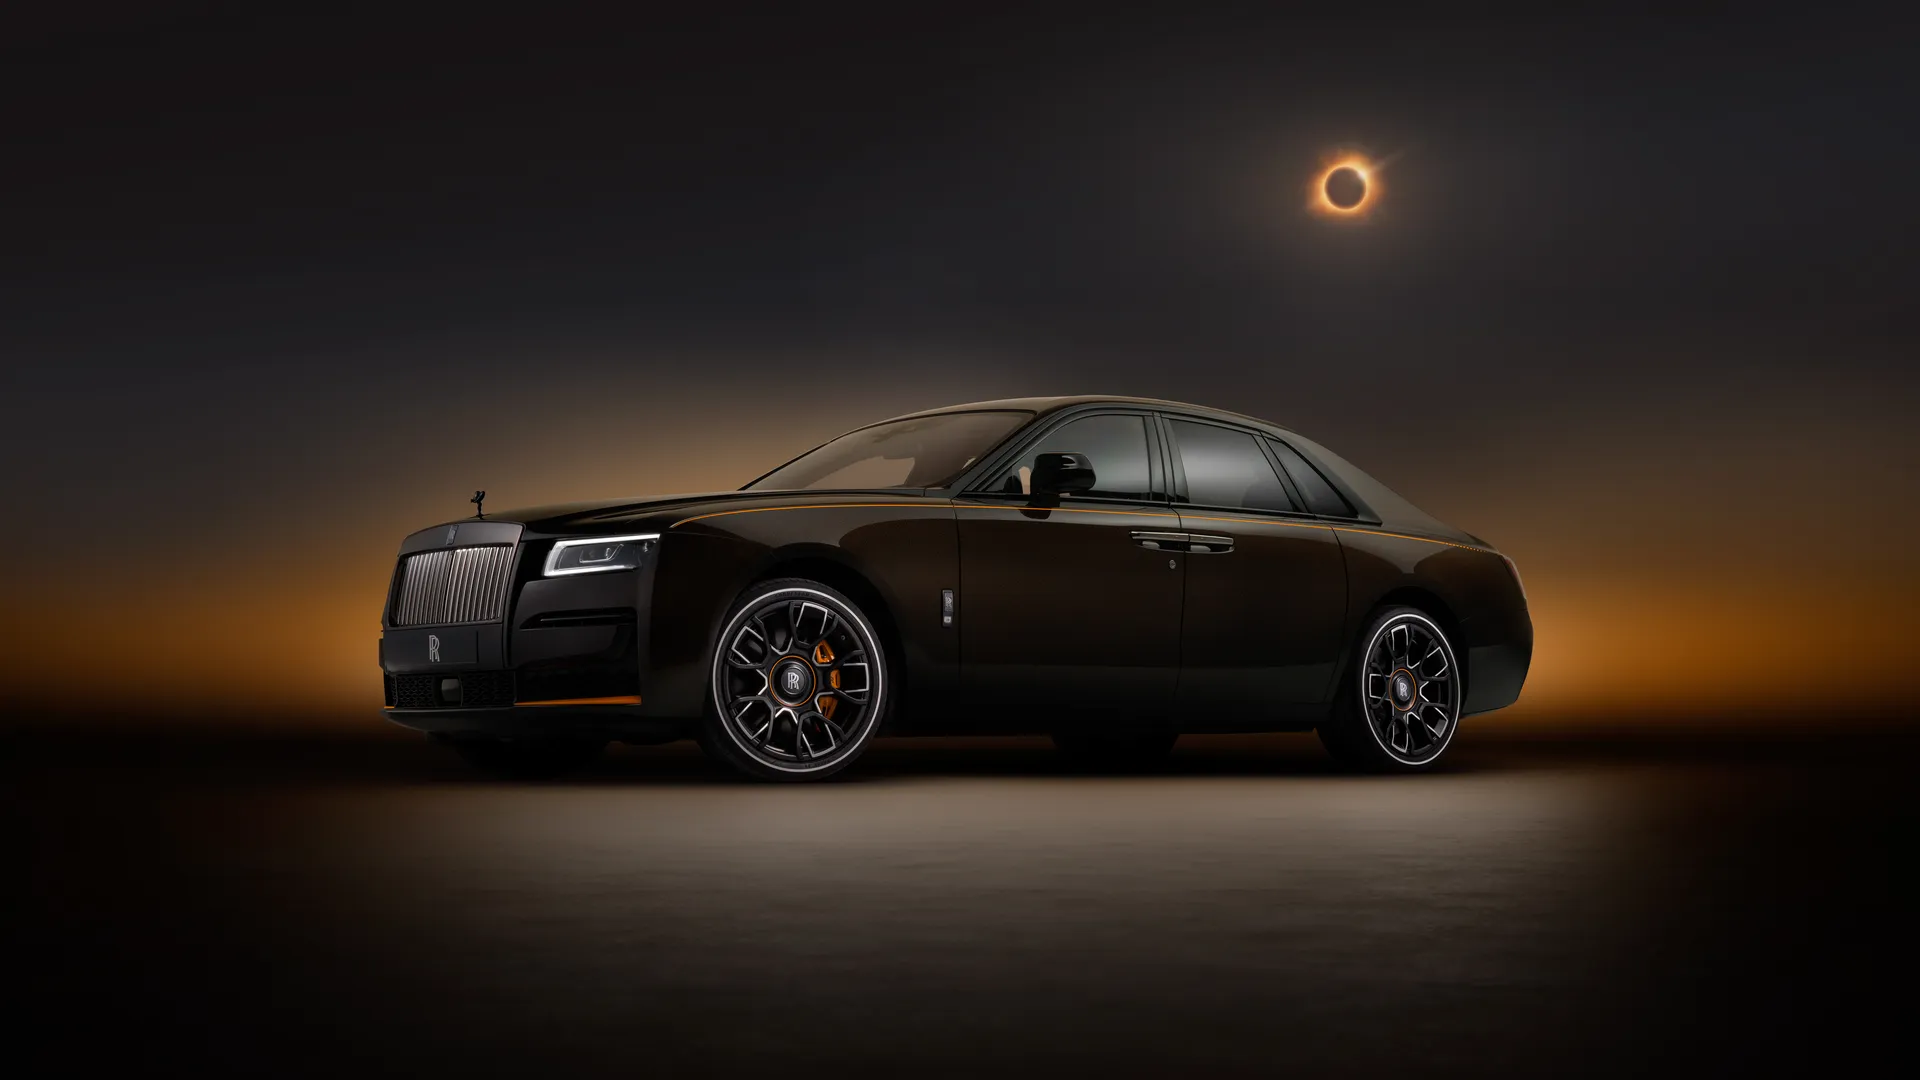 La enésima edición limitada del lujo sobre ruedas se llama Rolls-Royce Black Badge Ghost Ékleipsis Private Collection